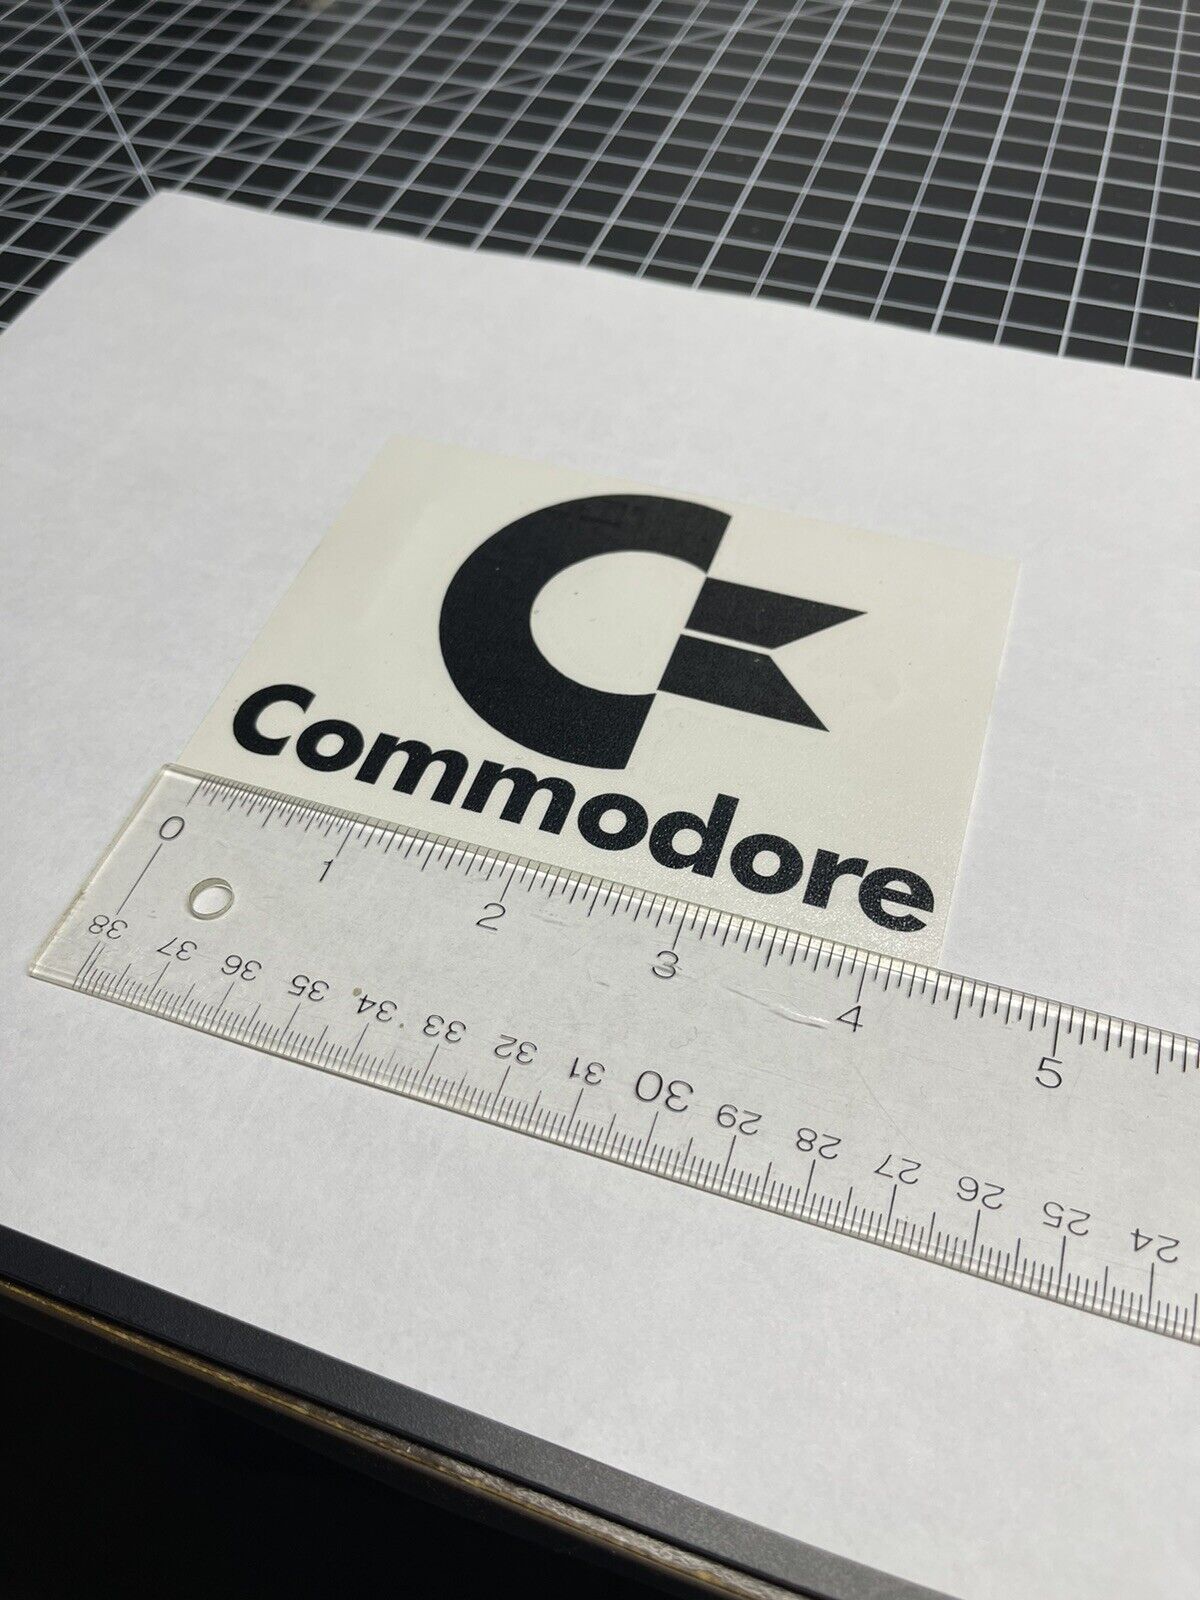 Commodore Logo C64 C128 Amiga Black Vinyl Decal